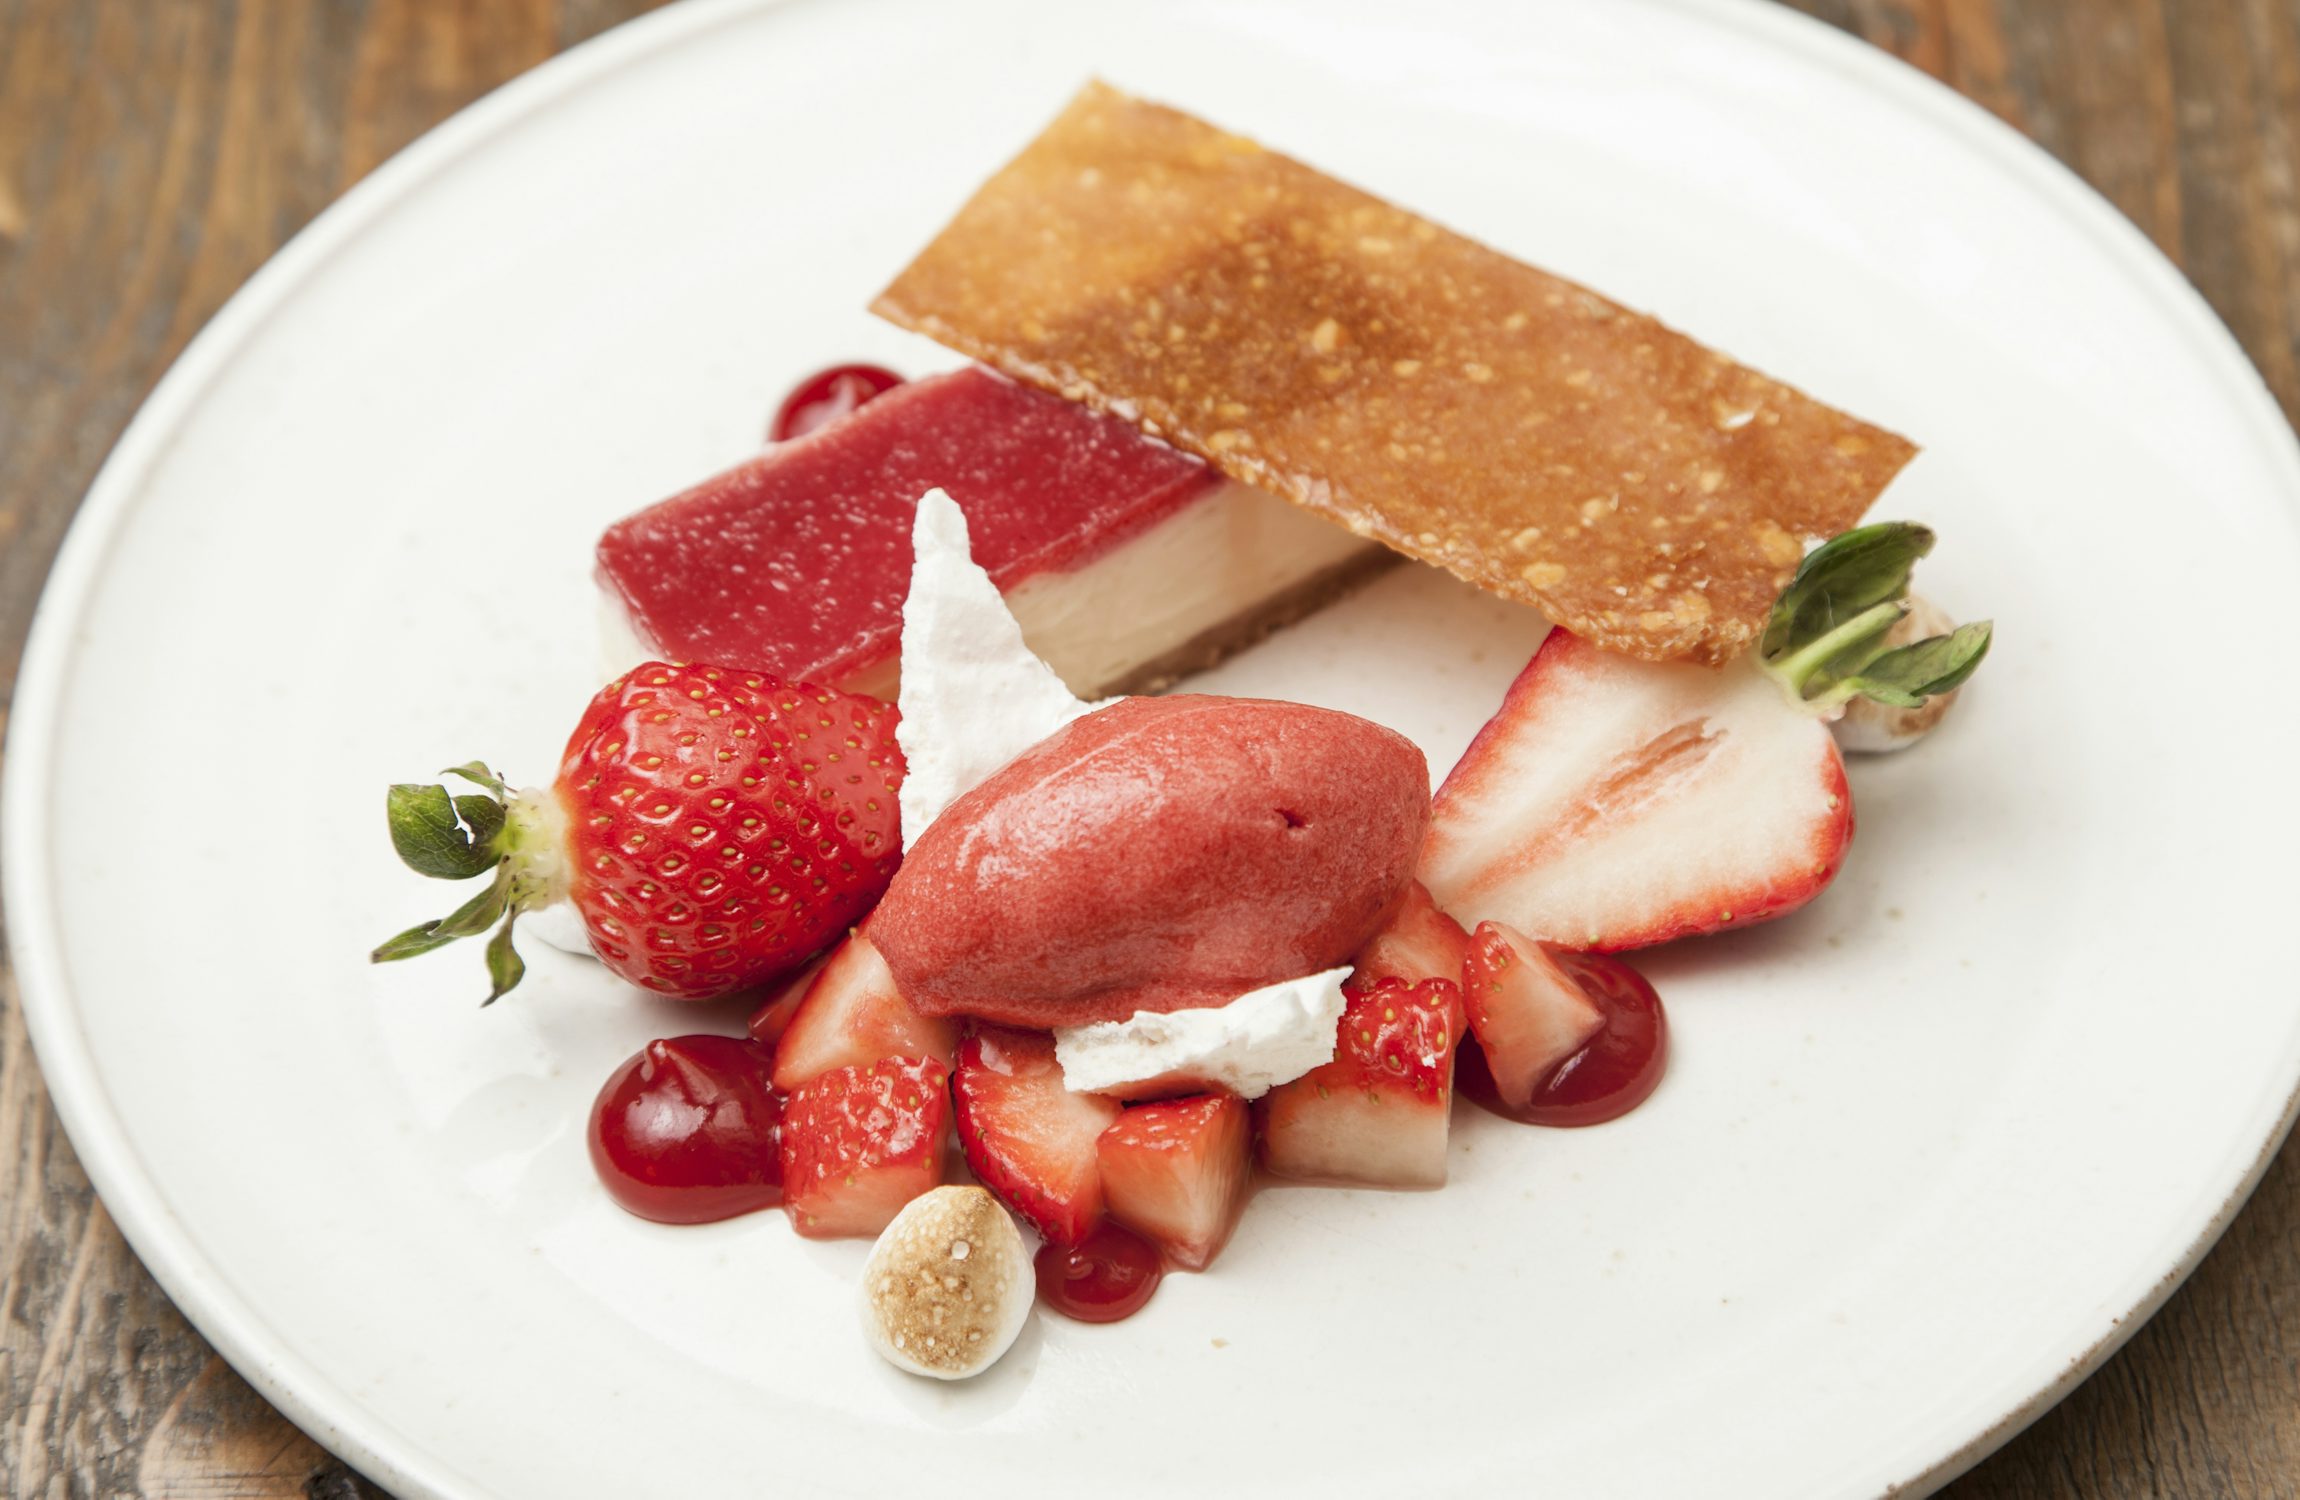 White Chocolate Cheesecake with Strawberries